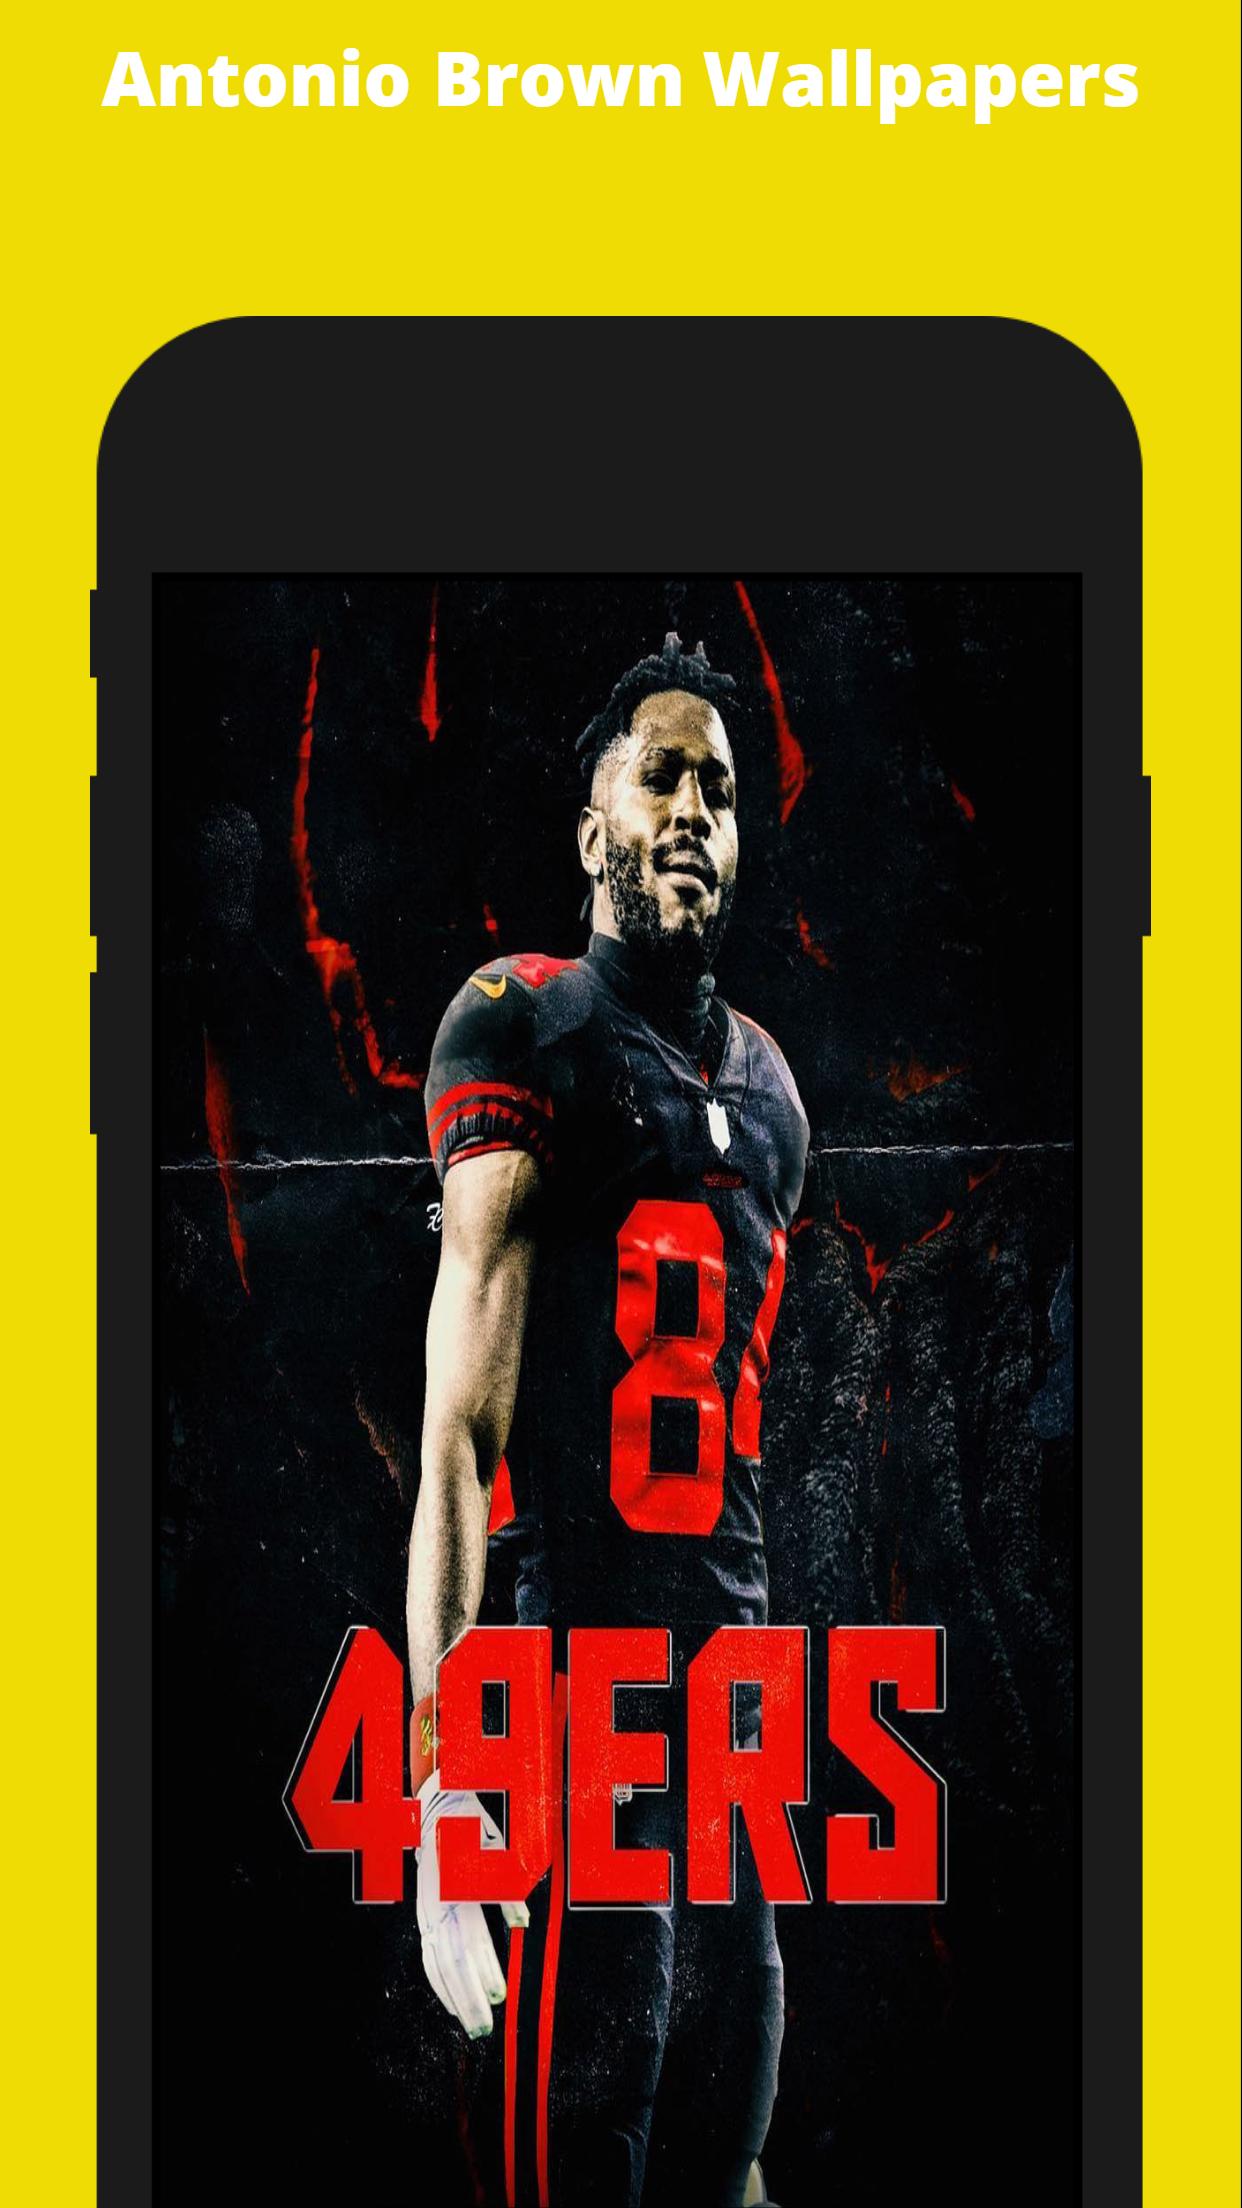 Antonio Brown Wallpapers - Steelers Wallpaper APK voor Android Download